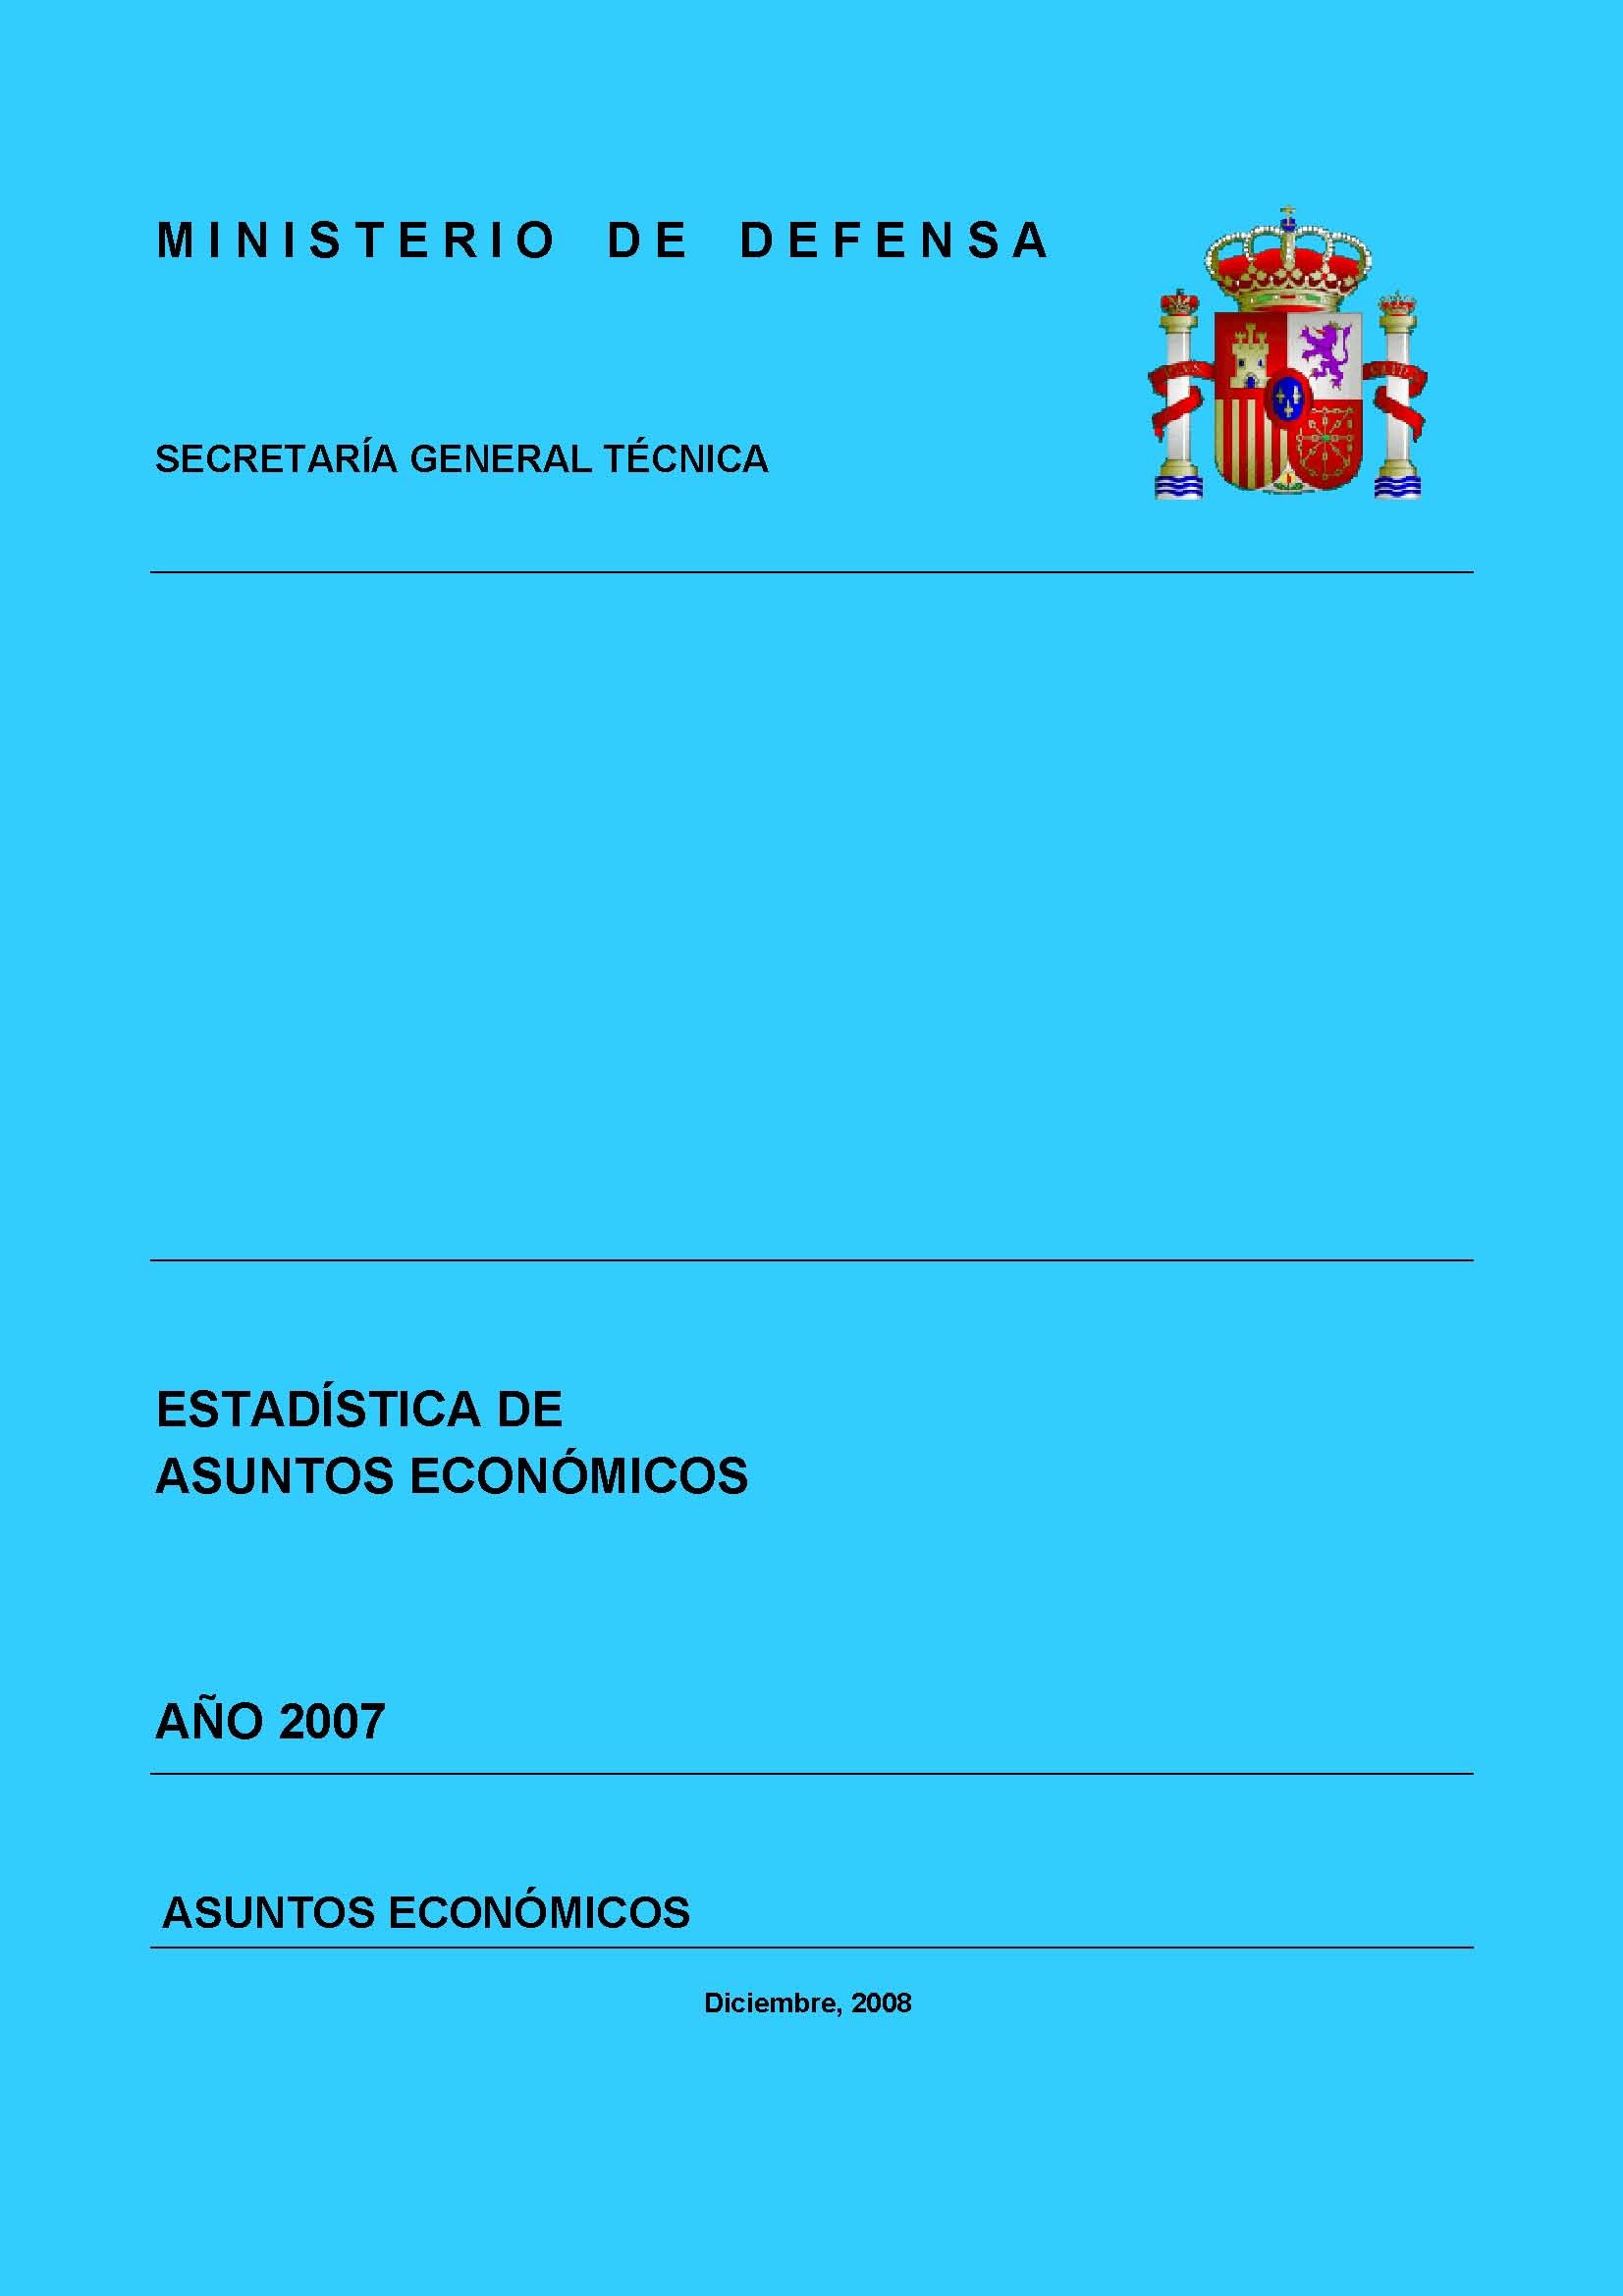 ESTADÍSTICA DE ASUNTOS ECONÓMICOS 2007